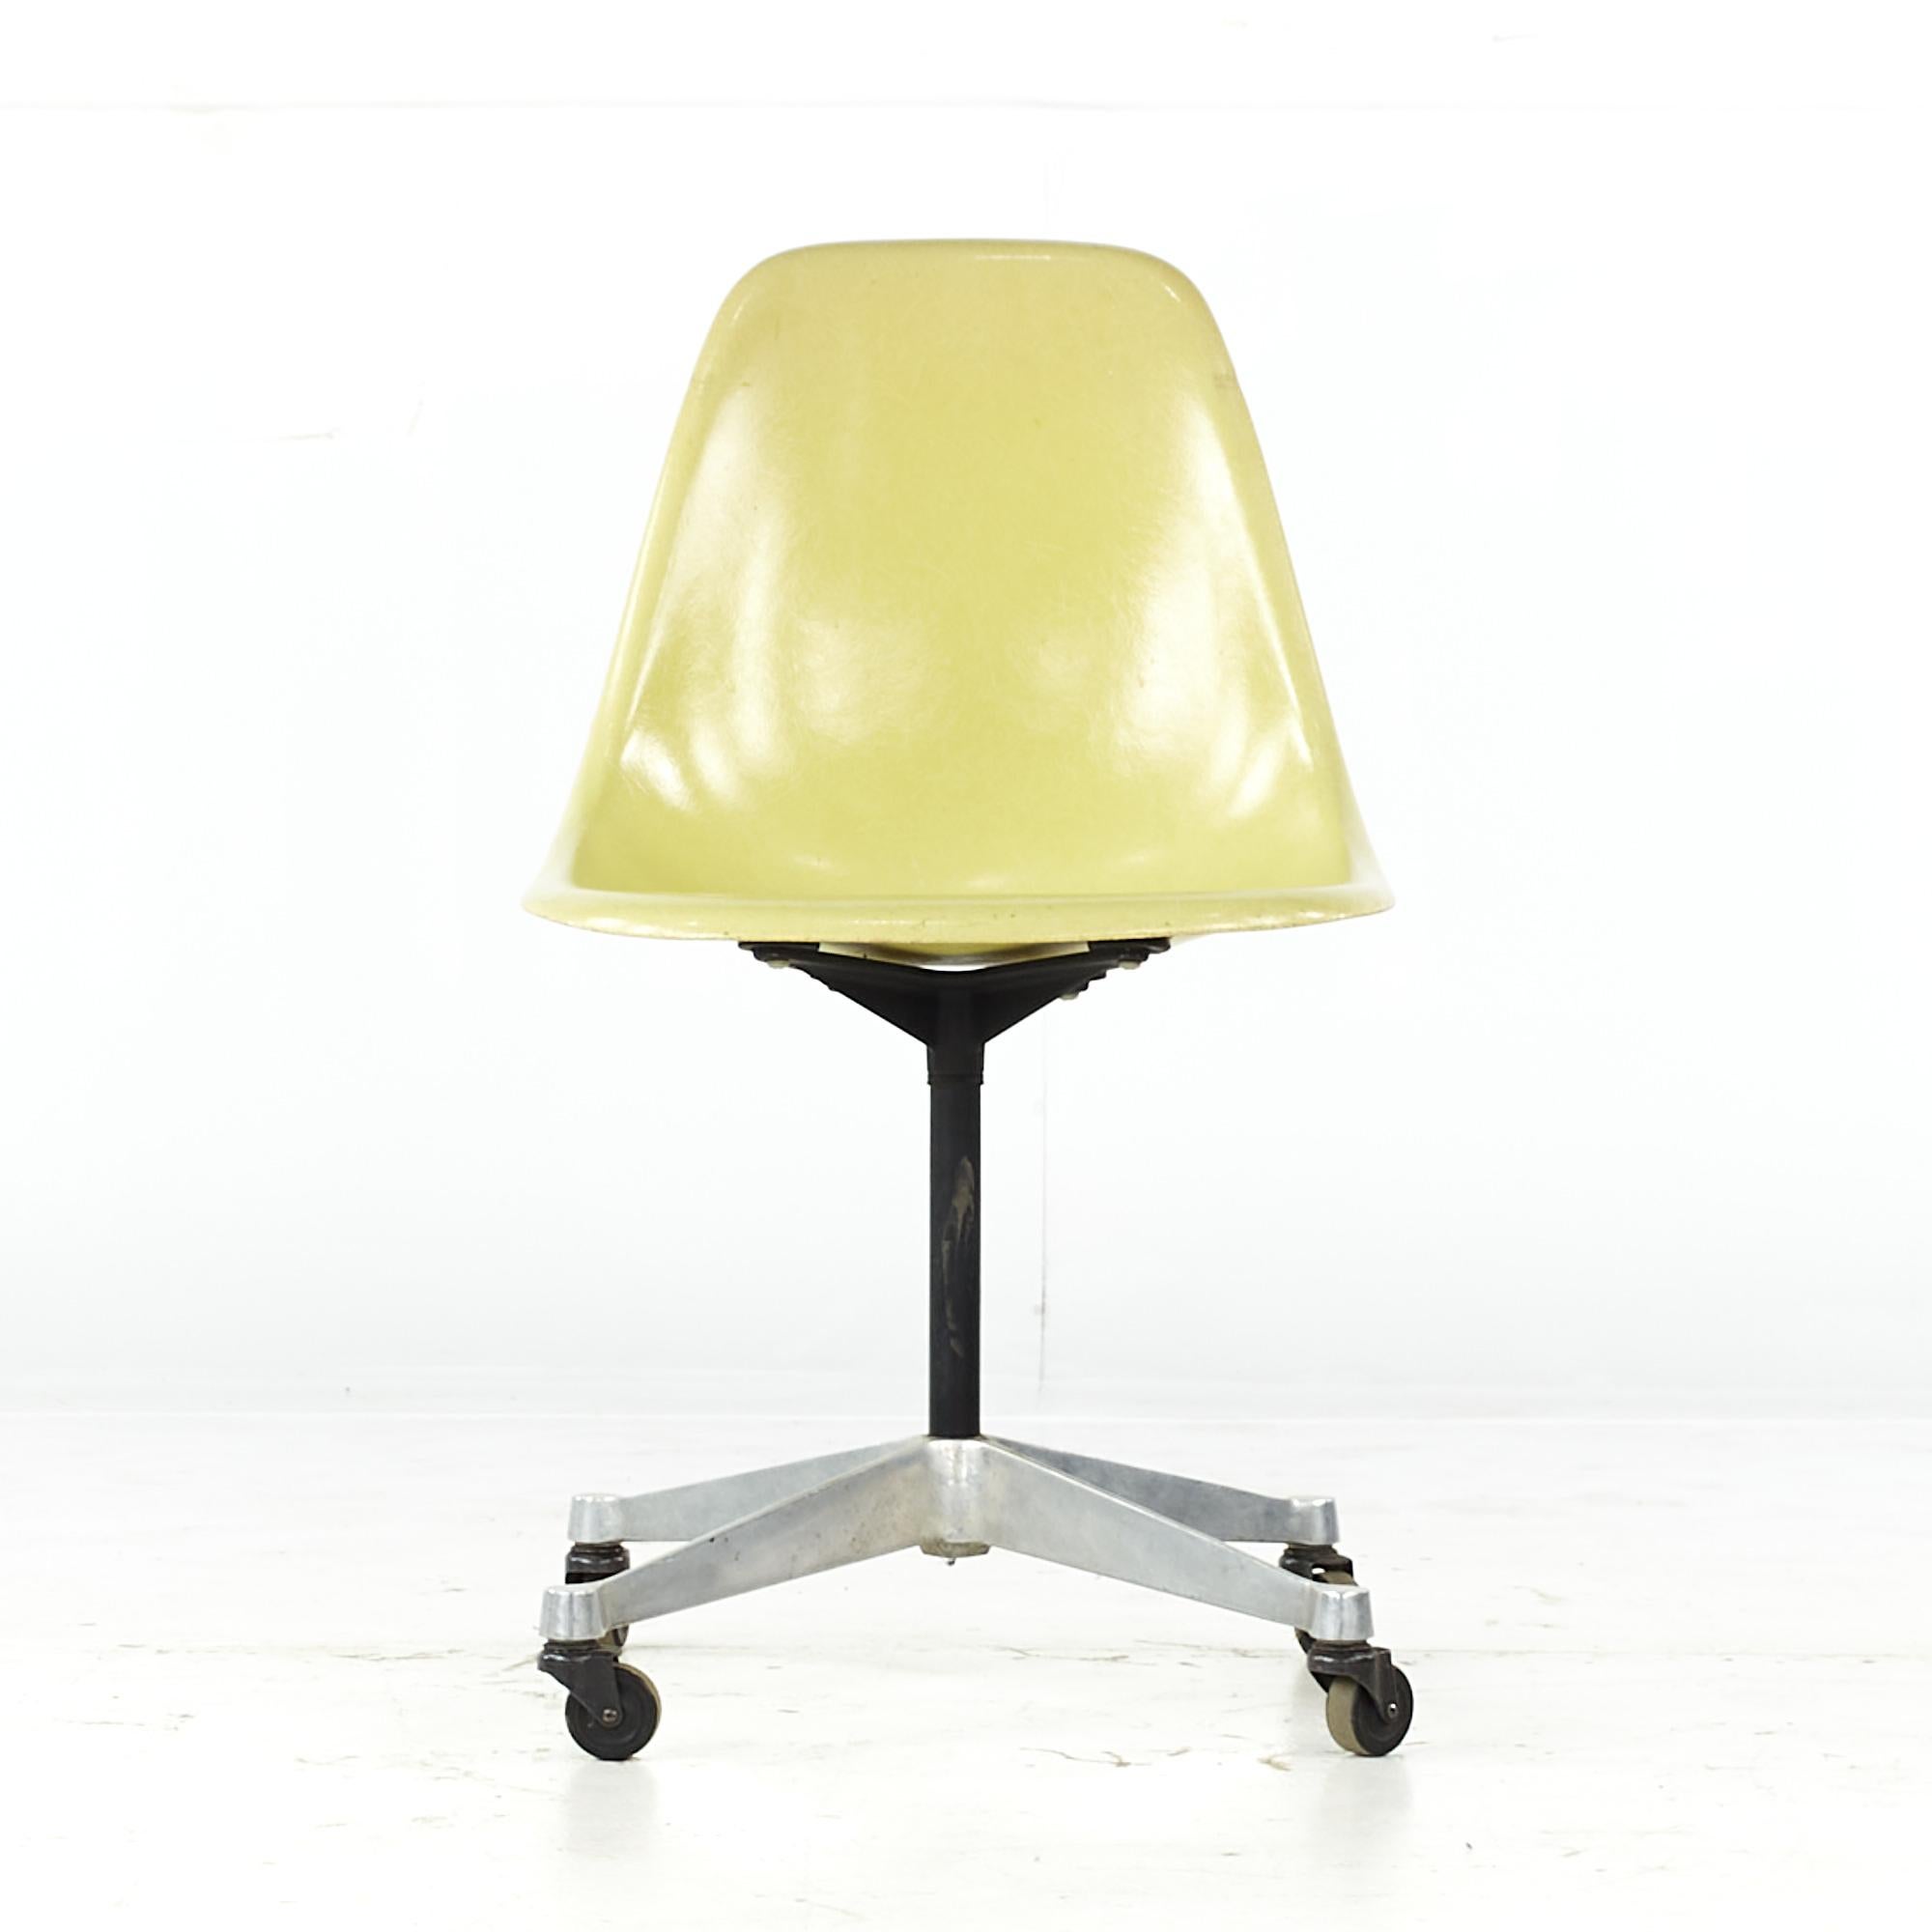 Chaise à coque roulante en fibre de verre de Charles et Ray Eames pour Herman Miller, datant du milieu du siècle dernier.

Cette chaise mesure : 18,5 de large x 24 de profond x 32 de haut, avec une hauteur d'assise de 17,5 pouces.

Tous les